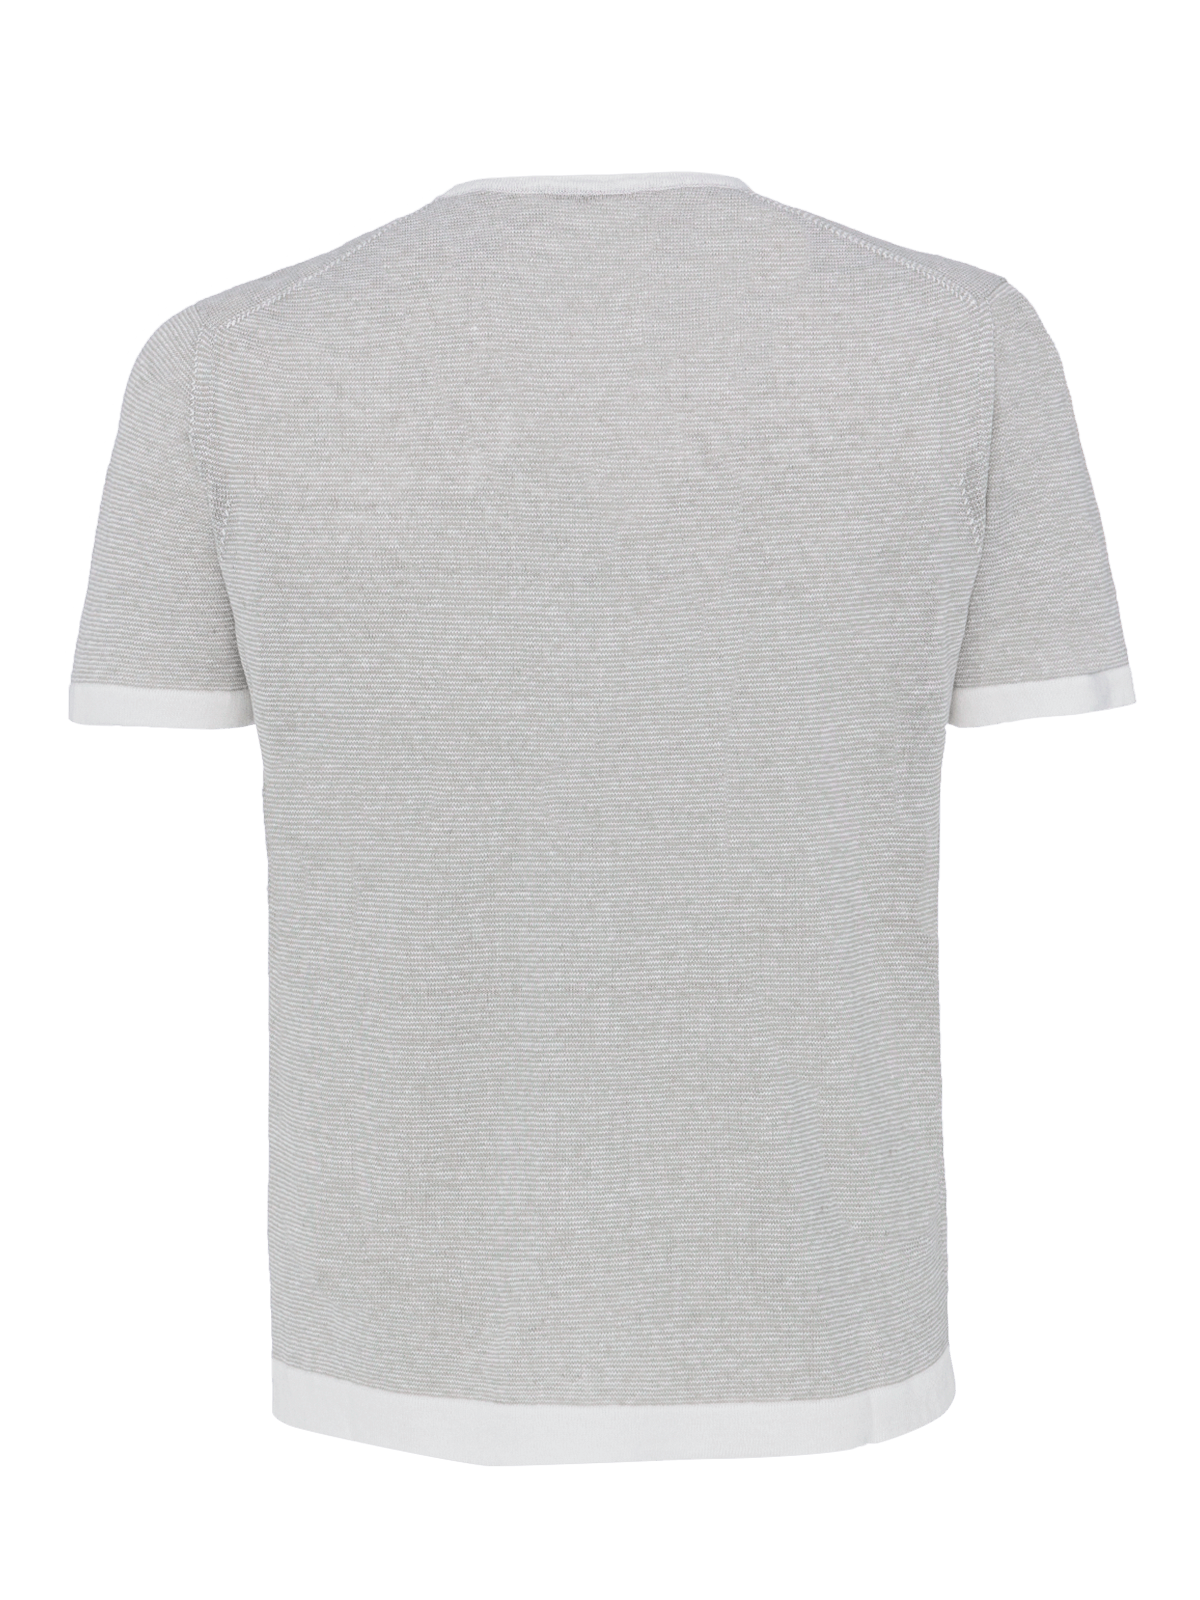 St. Barth linen T-Shirt for man 100% Capri light grey and white linen t-shirt back